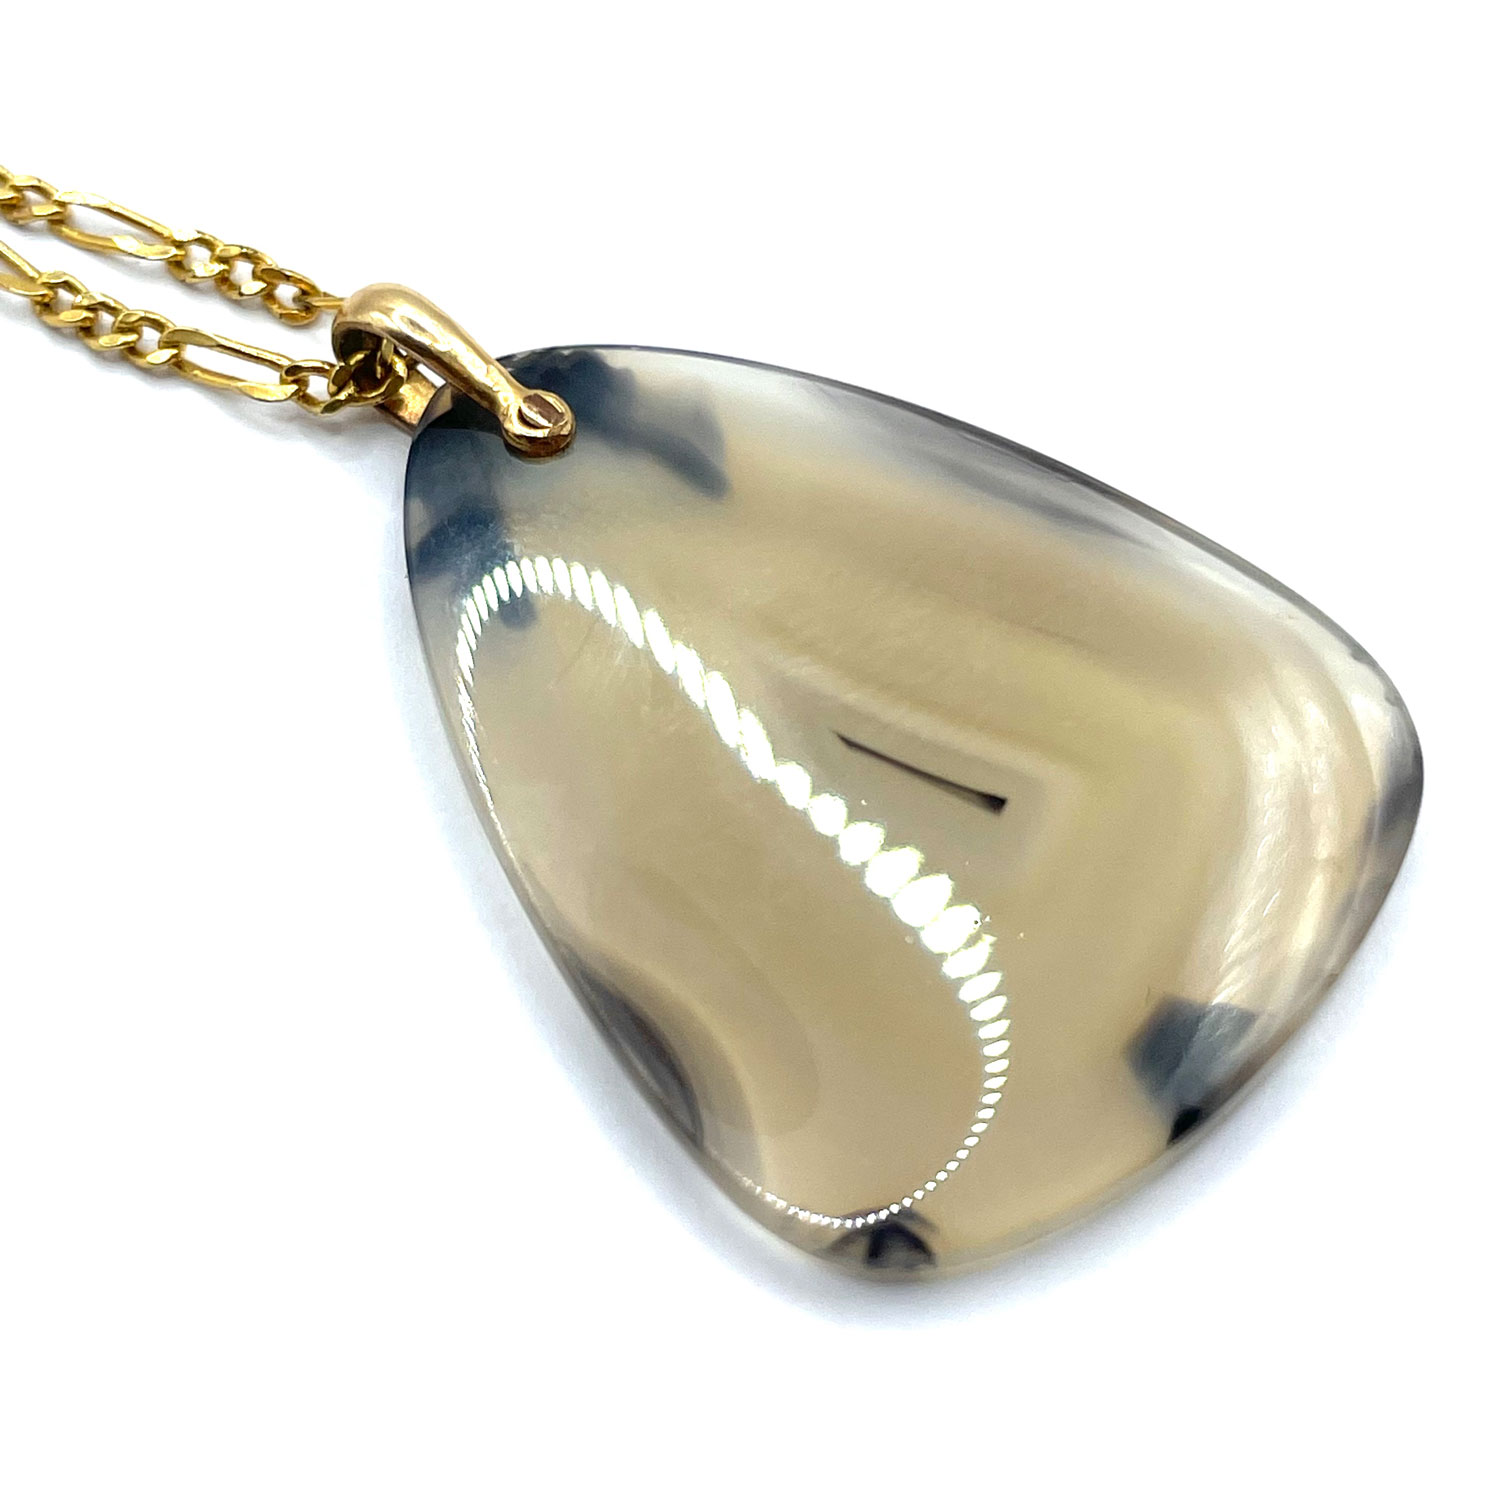 Art Deco agate pendant necklace